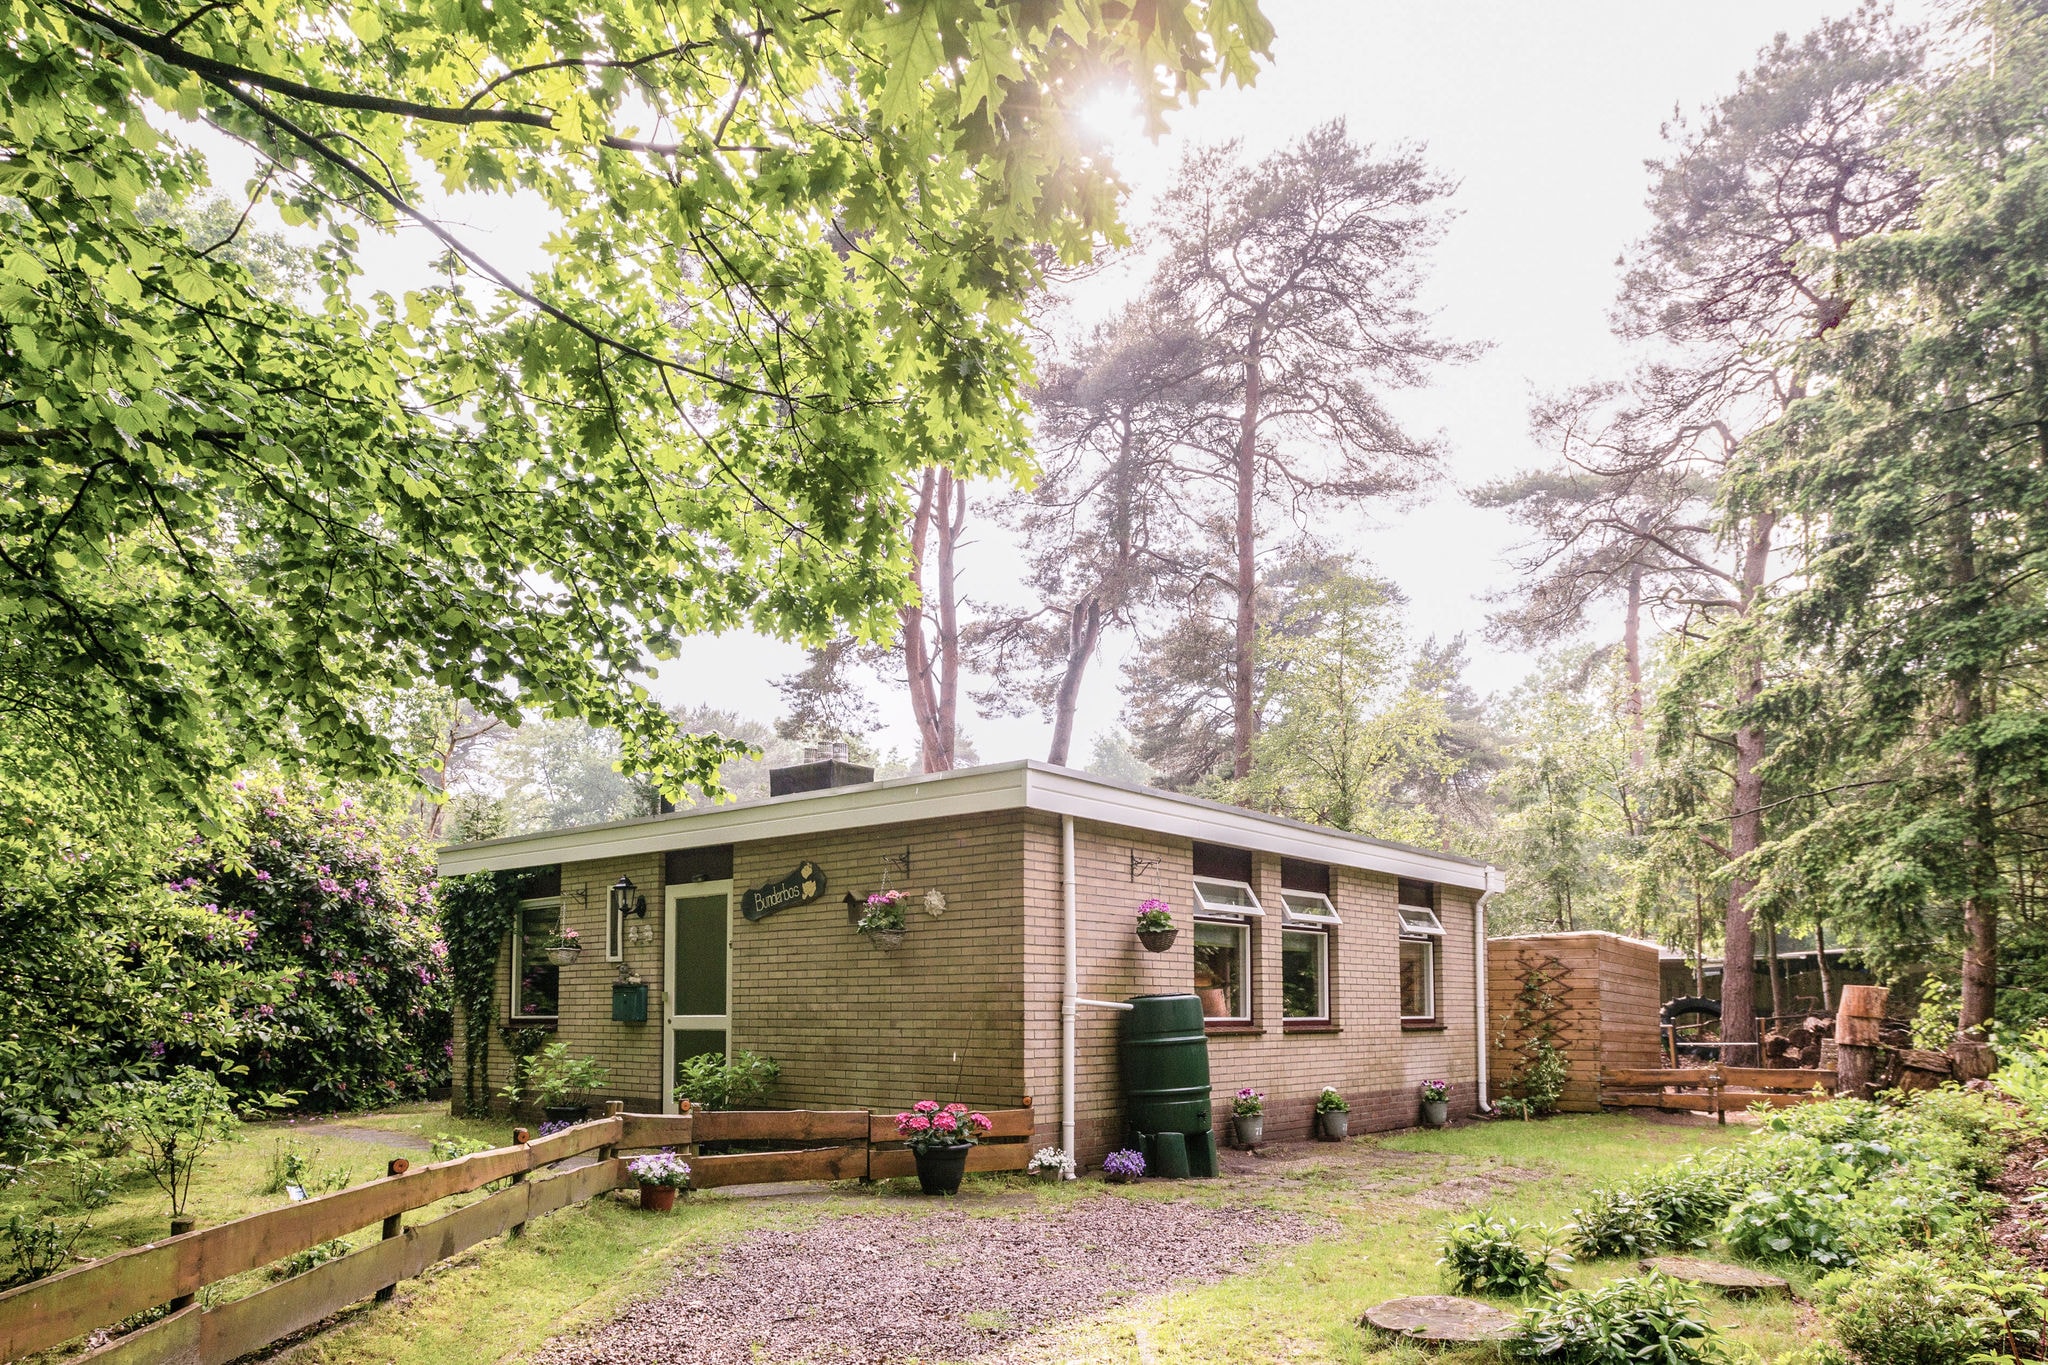 Maison de vacances meublée à Overijssel près de la forêt